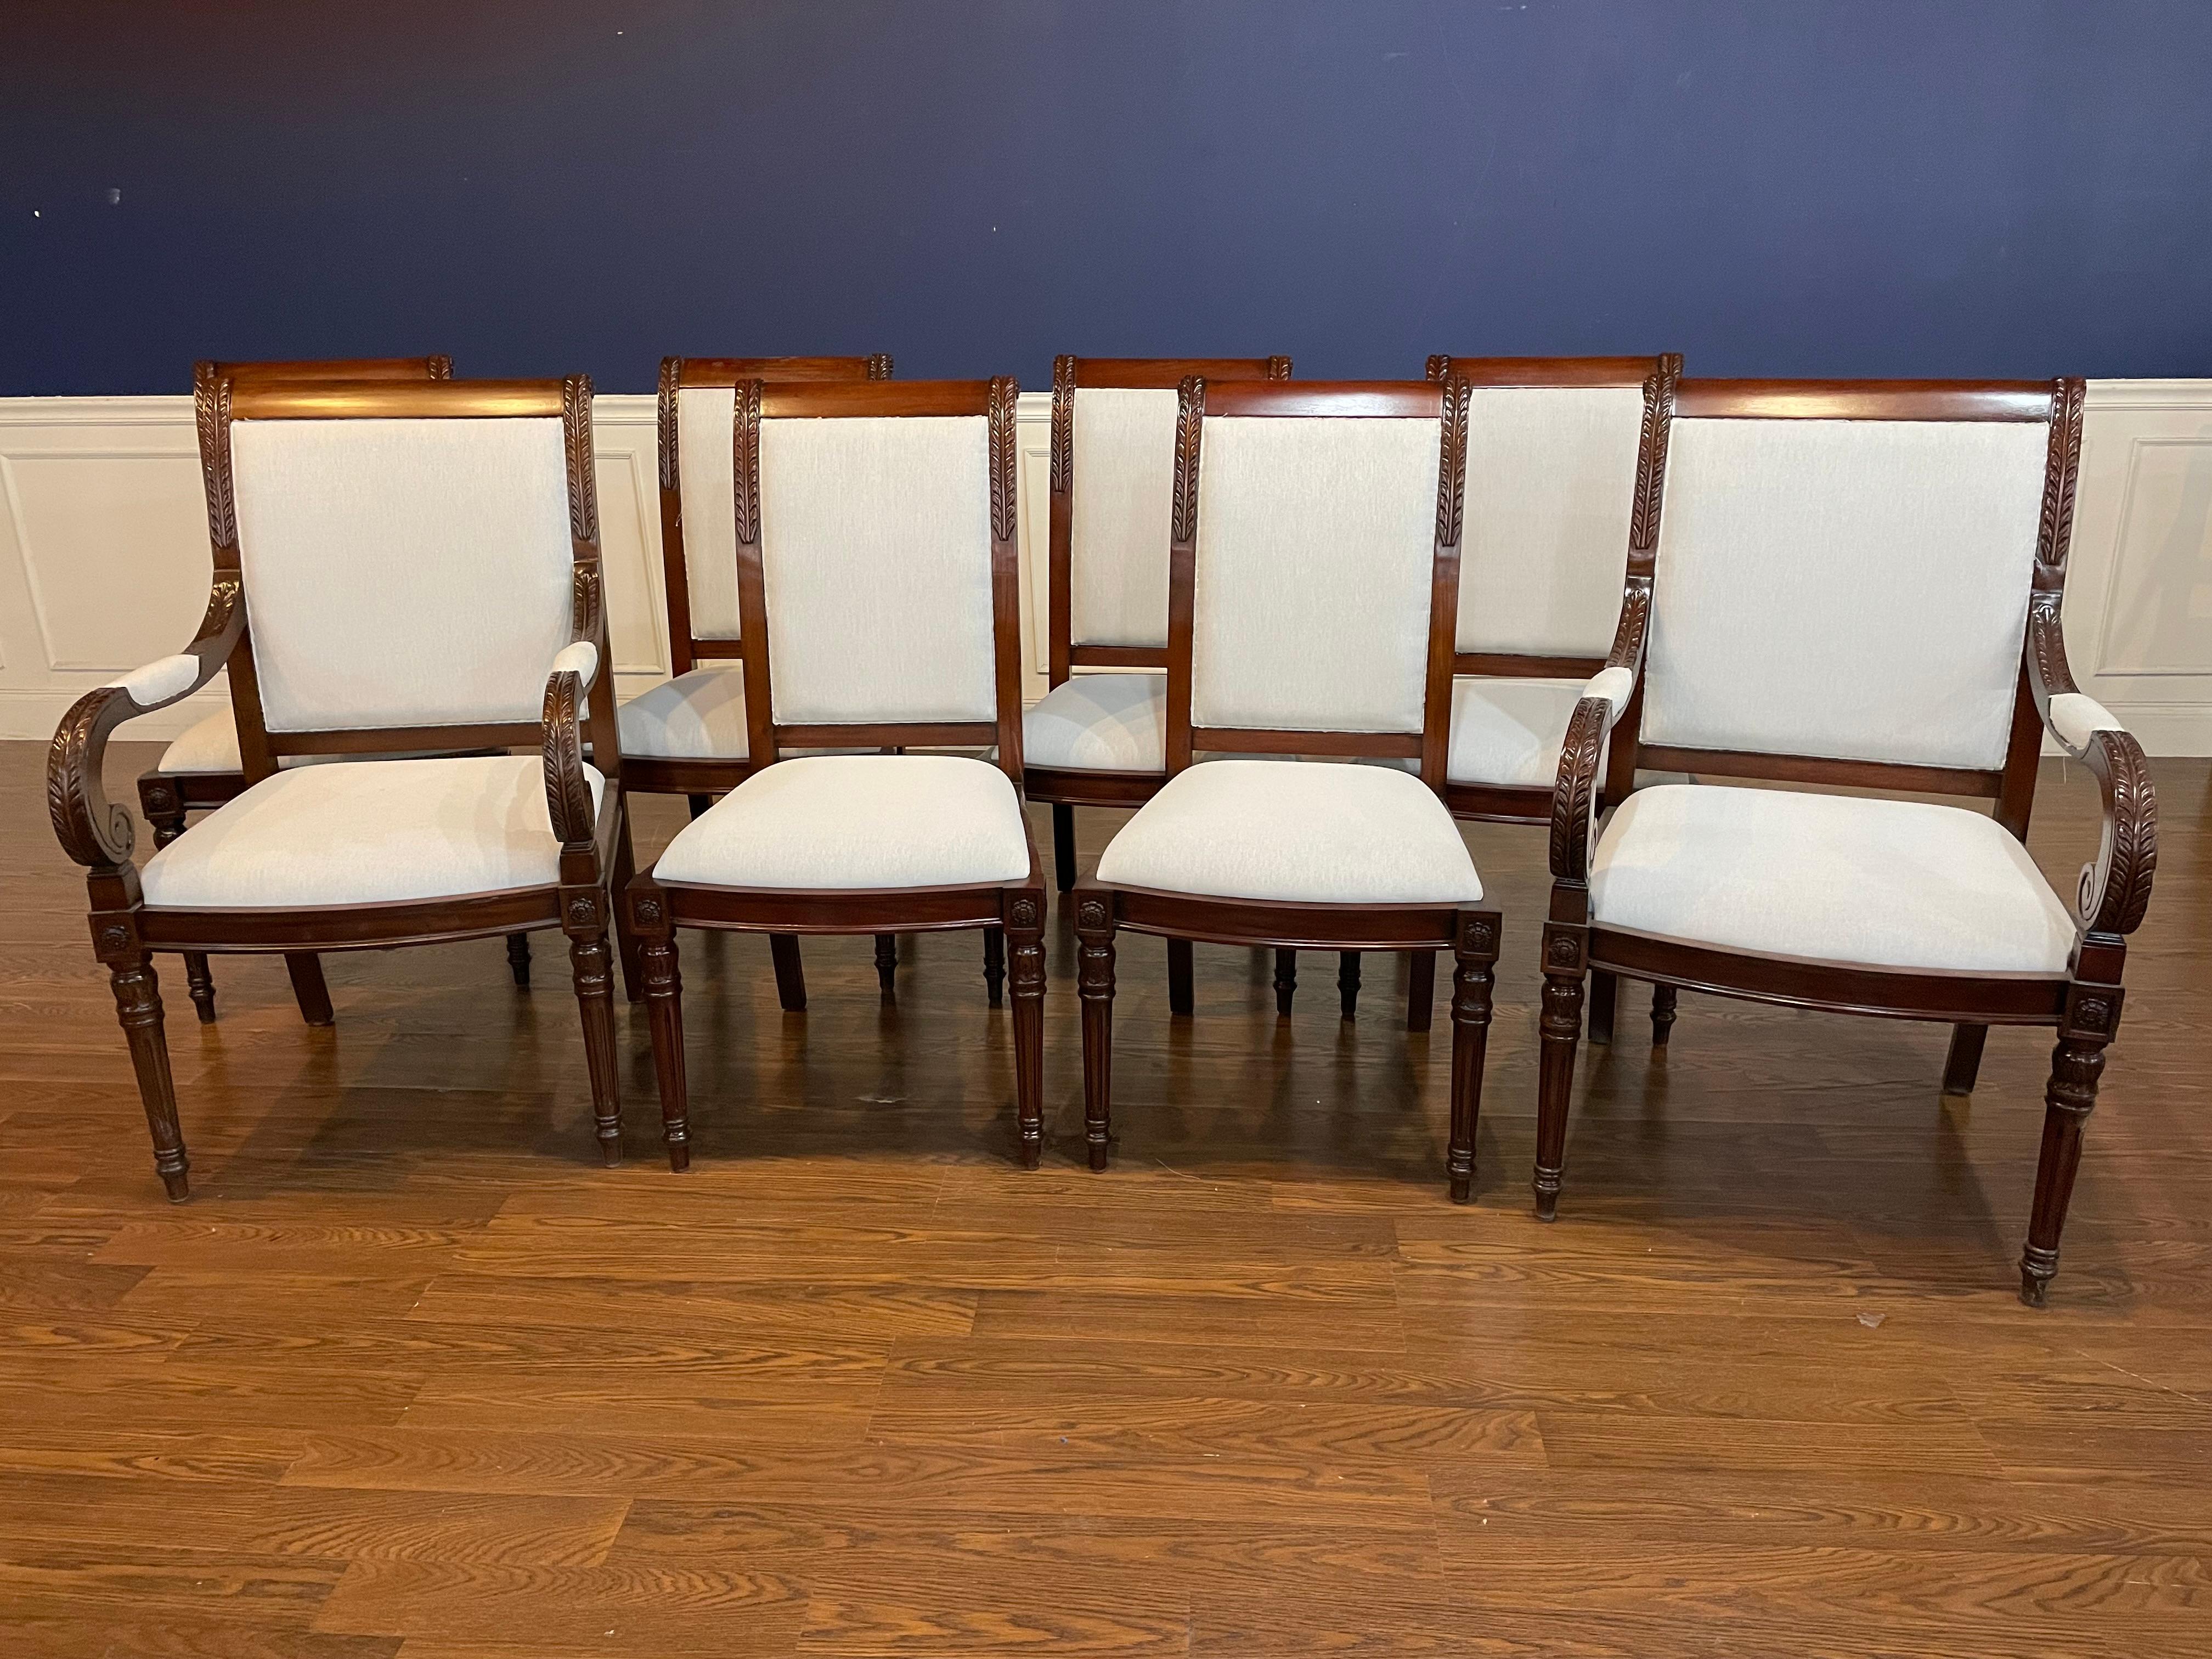 Dies ist ein Satz von acht (2 Arme und 6 Seiten) Newport Mahagoni Esszimmerstühle von Leighton Hall. Die Rückseiten sind mit Akanthusblättern verziert, die Beine sind klassisch rund, kanneliert und verjüngt.  Die Stühle sind in einem mittelbraunen